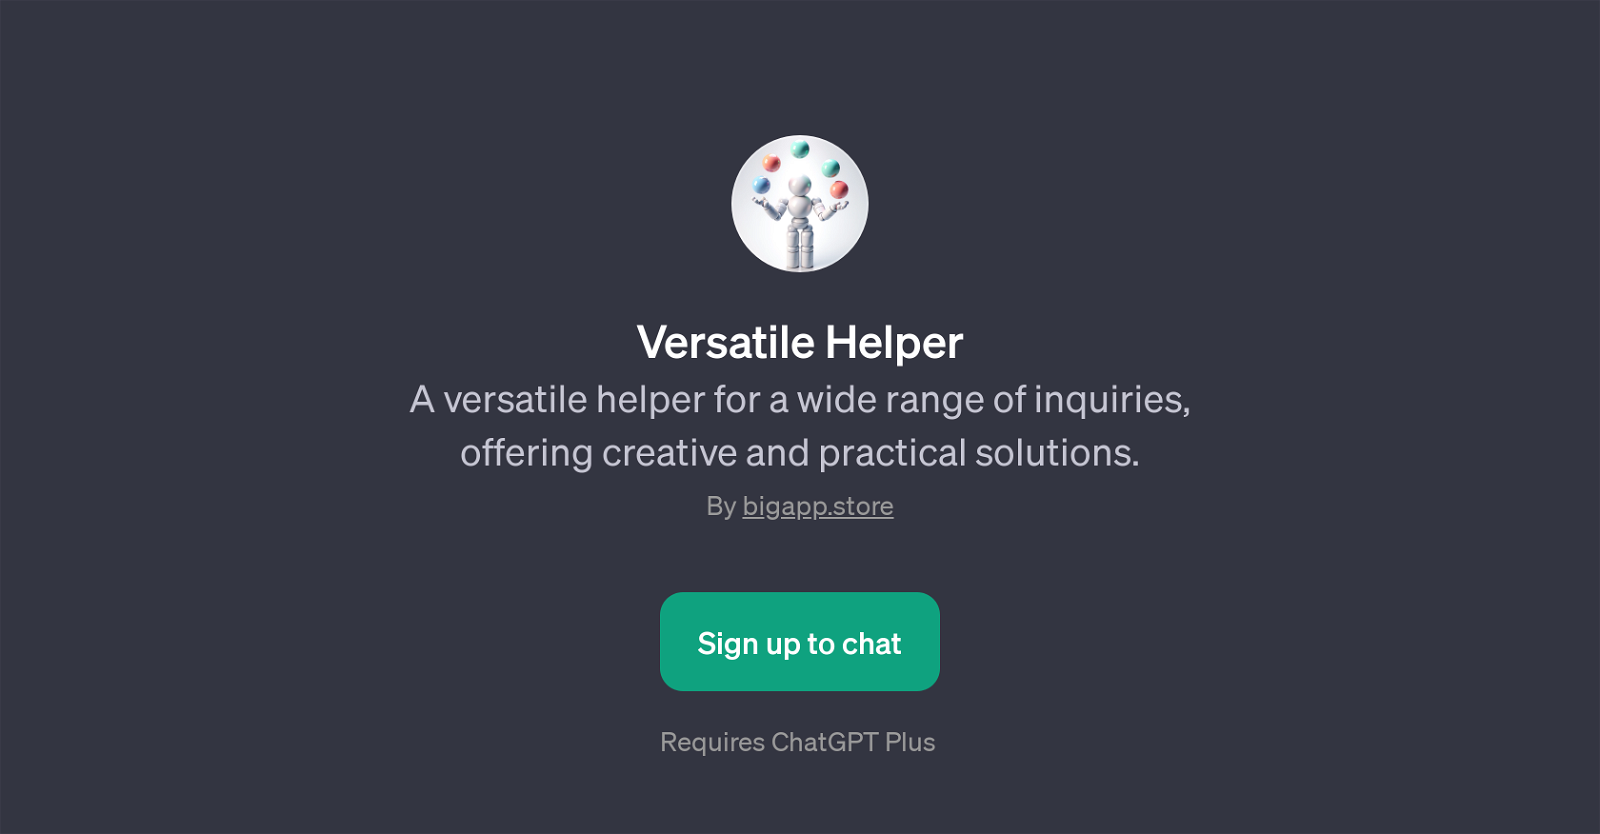 Versatile Helper website